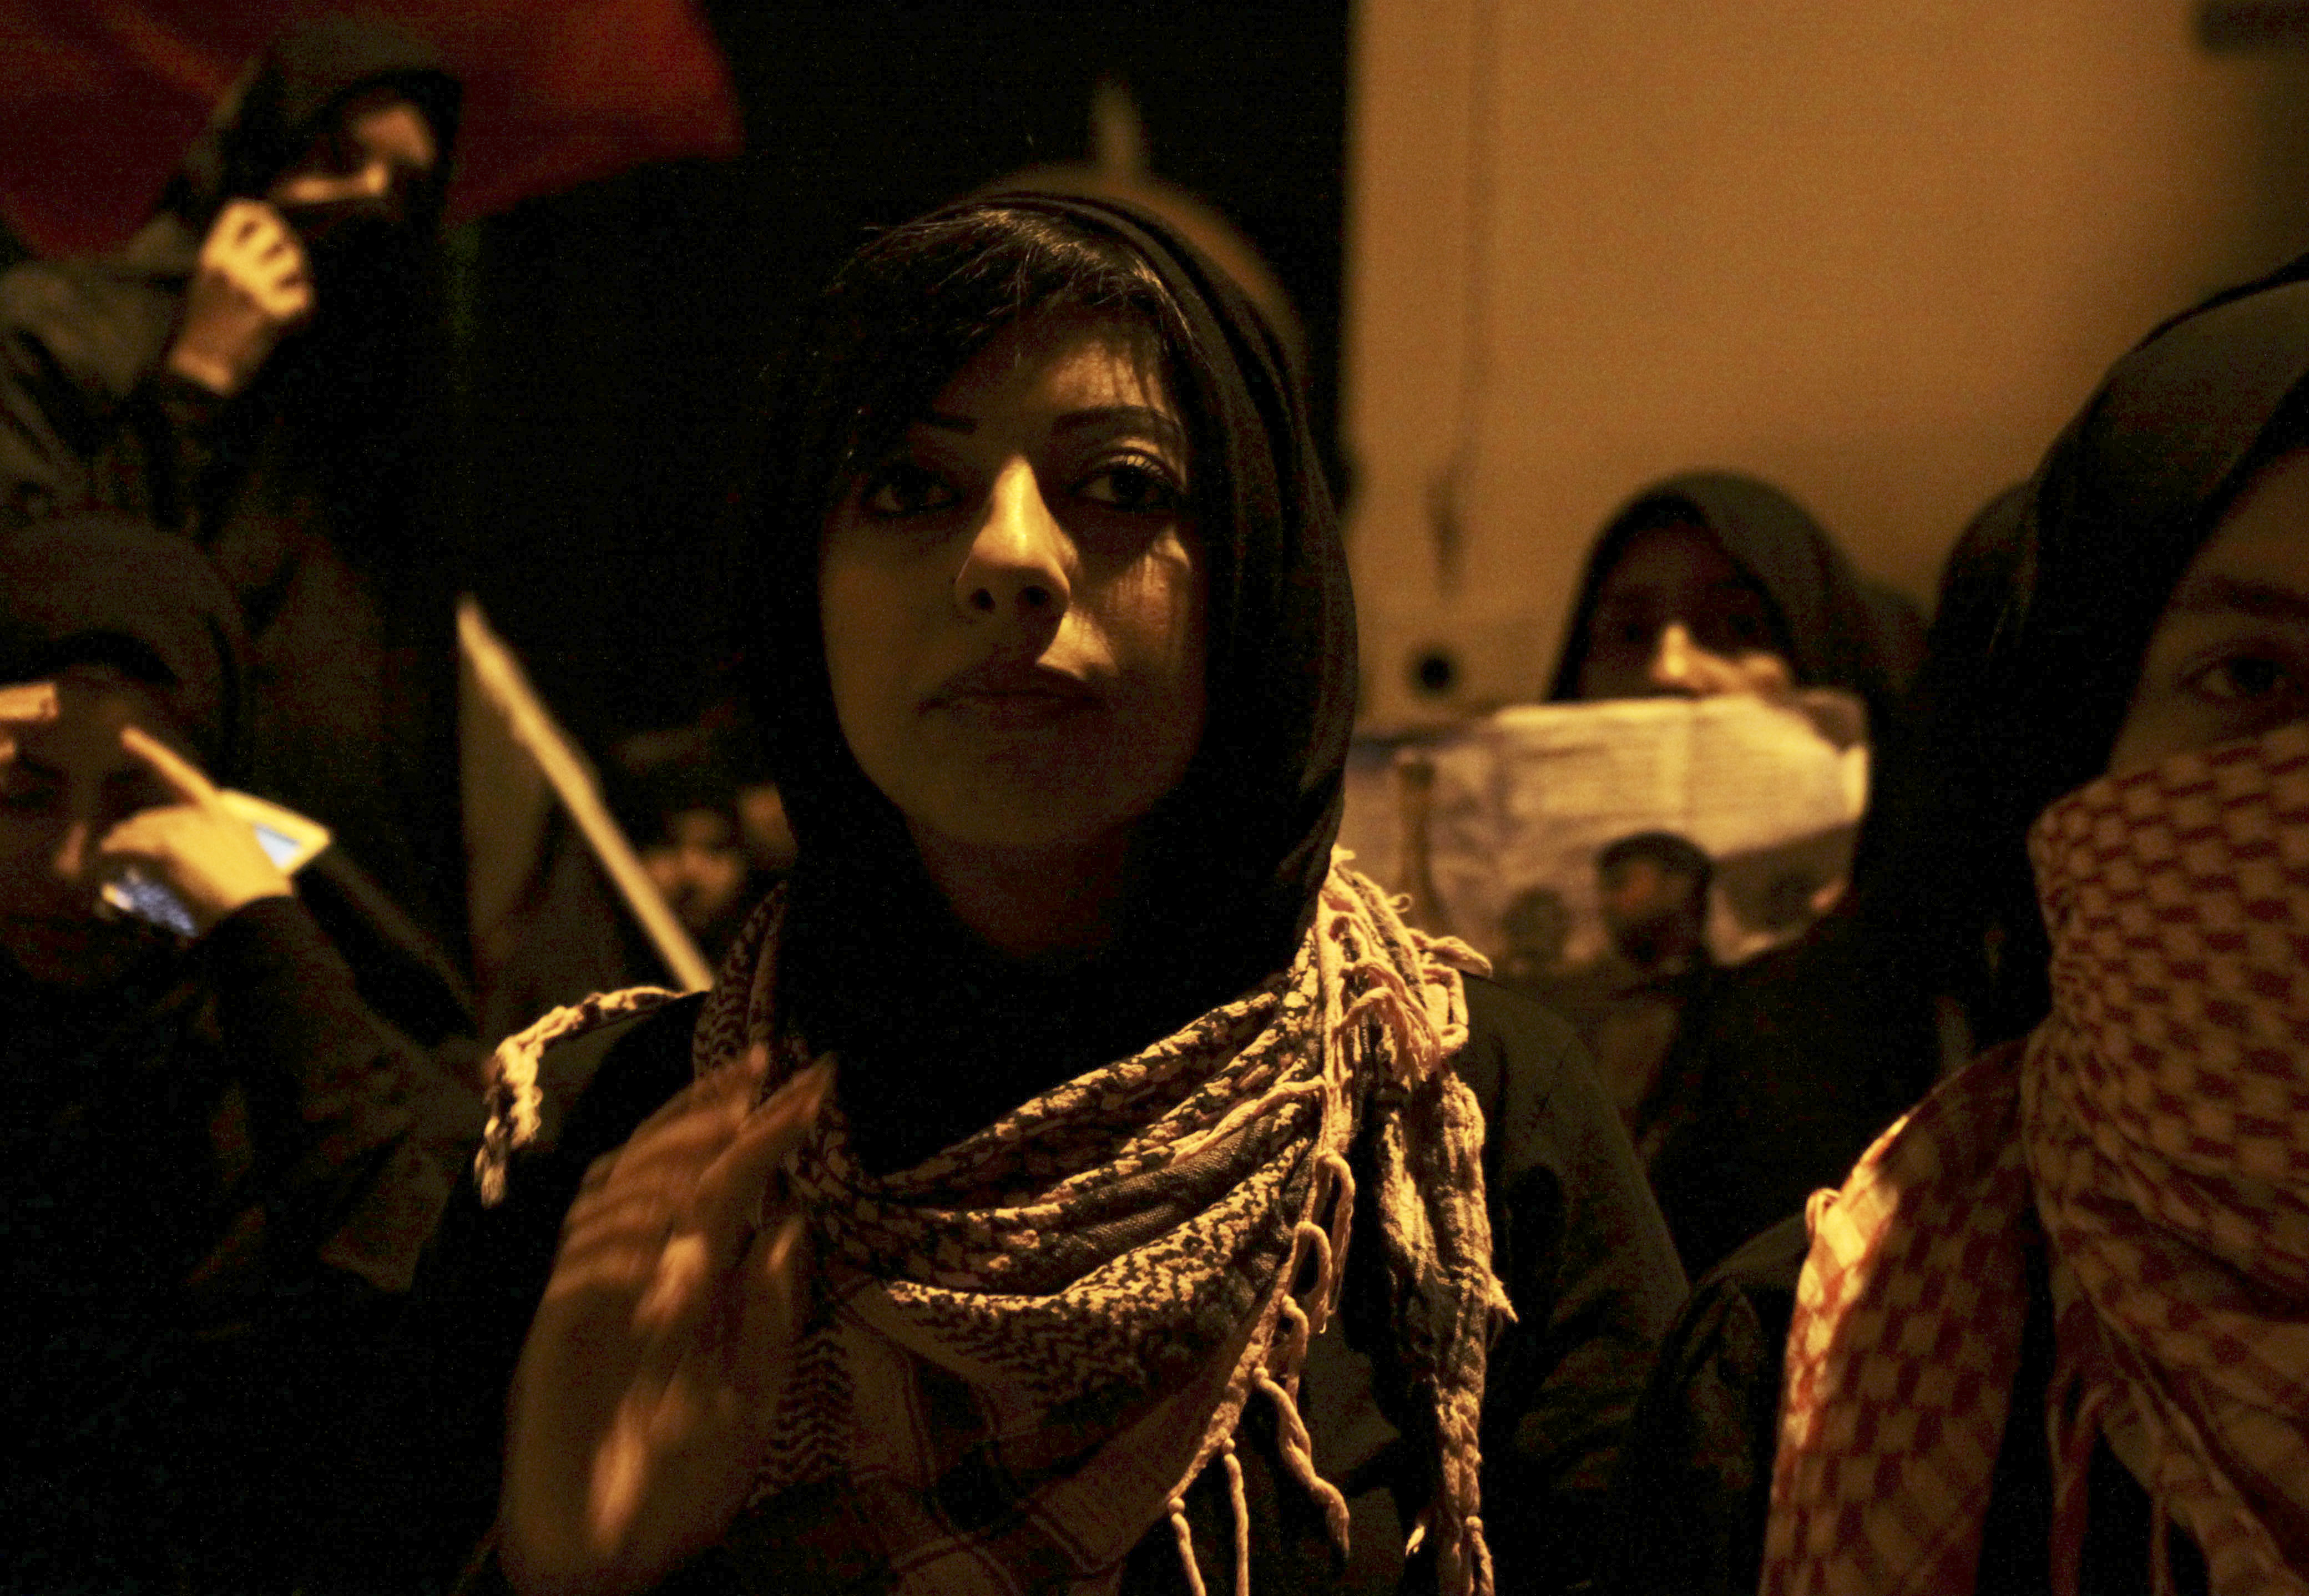 Hans andra dotter, Zainab al-Khawaja, är mer känd som "Angry Arabiya" på twitter. Här protesterar hon mot fängslandet av hennes far.